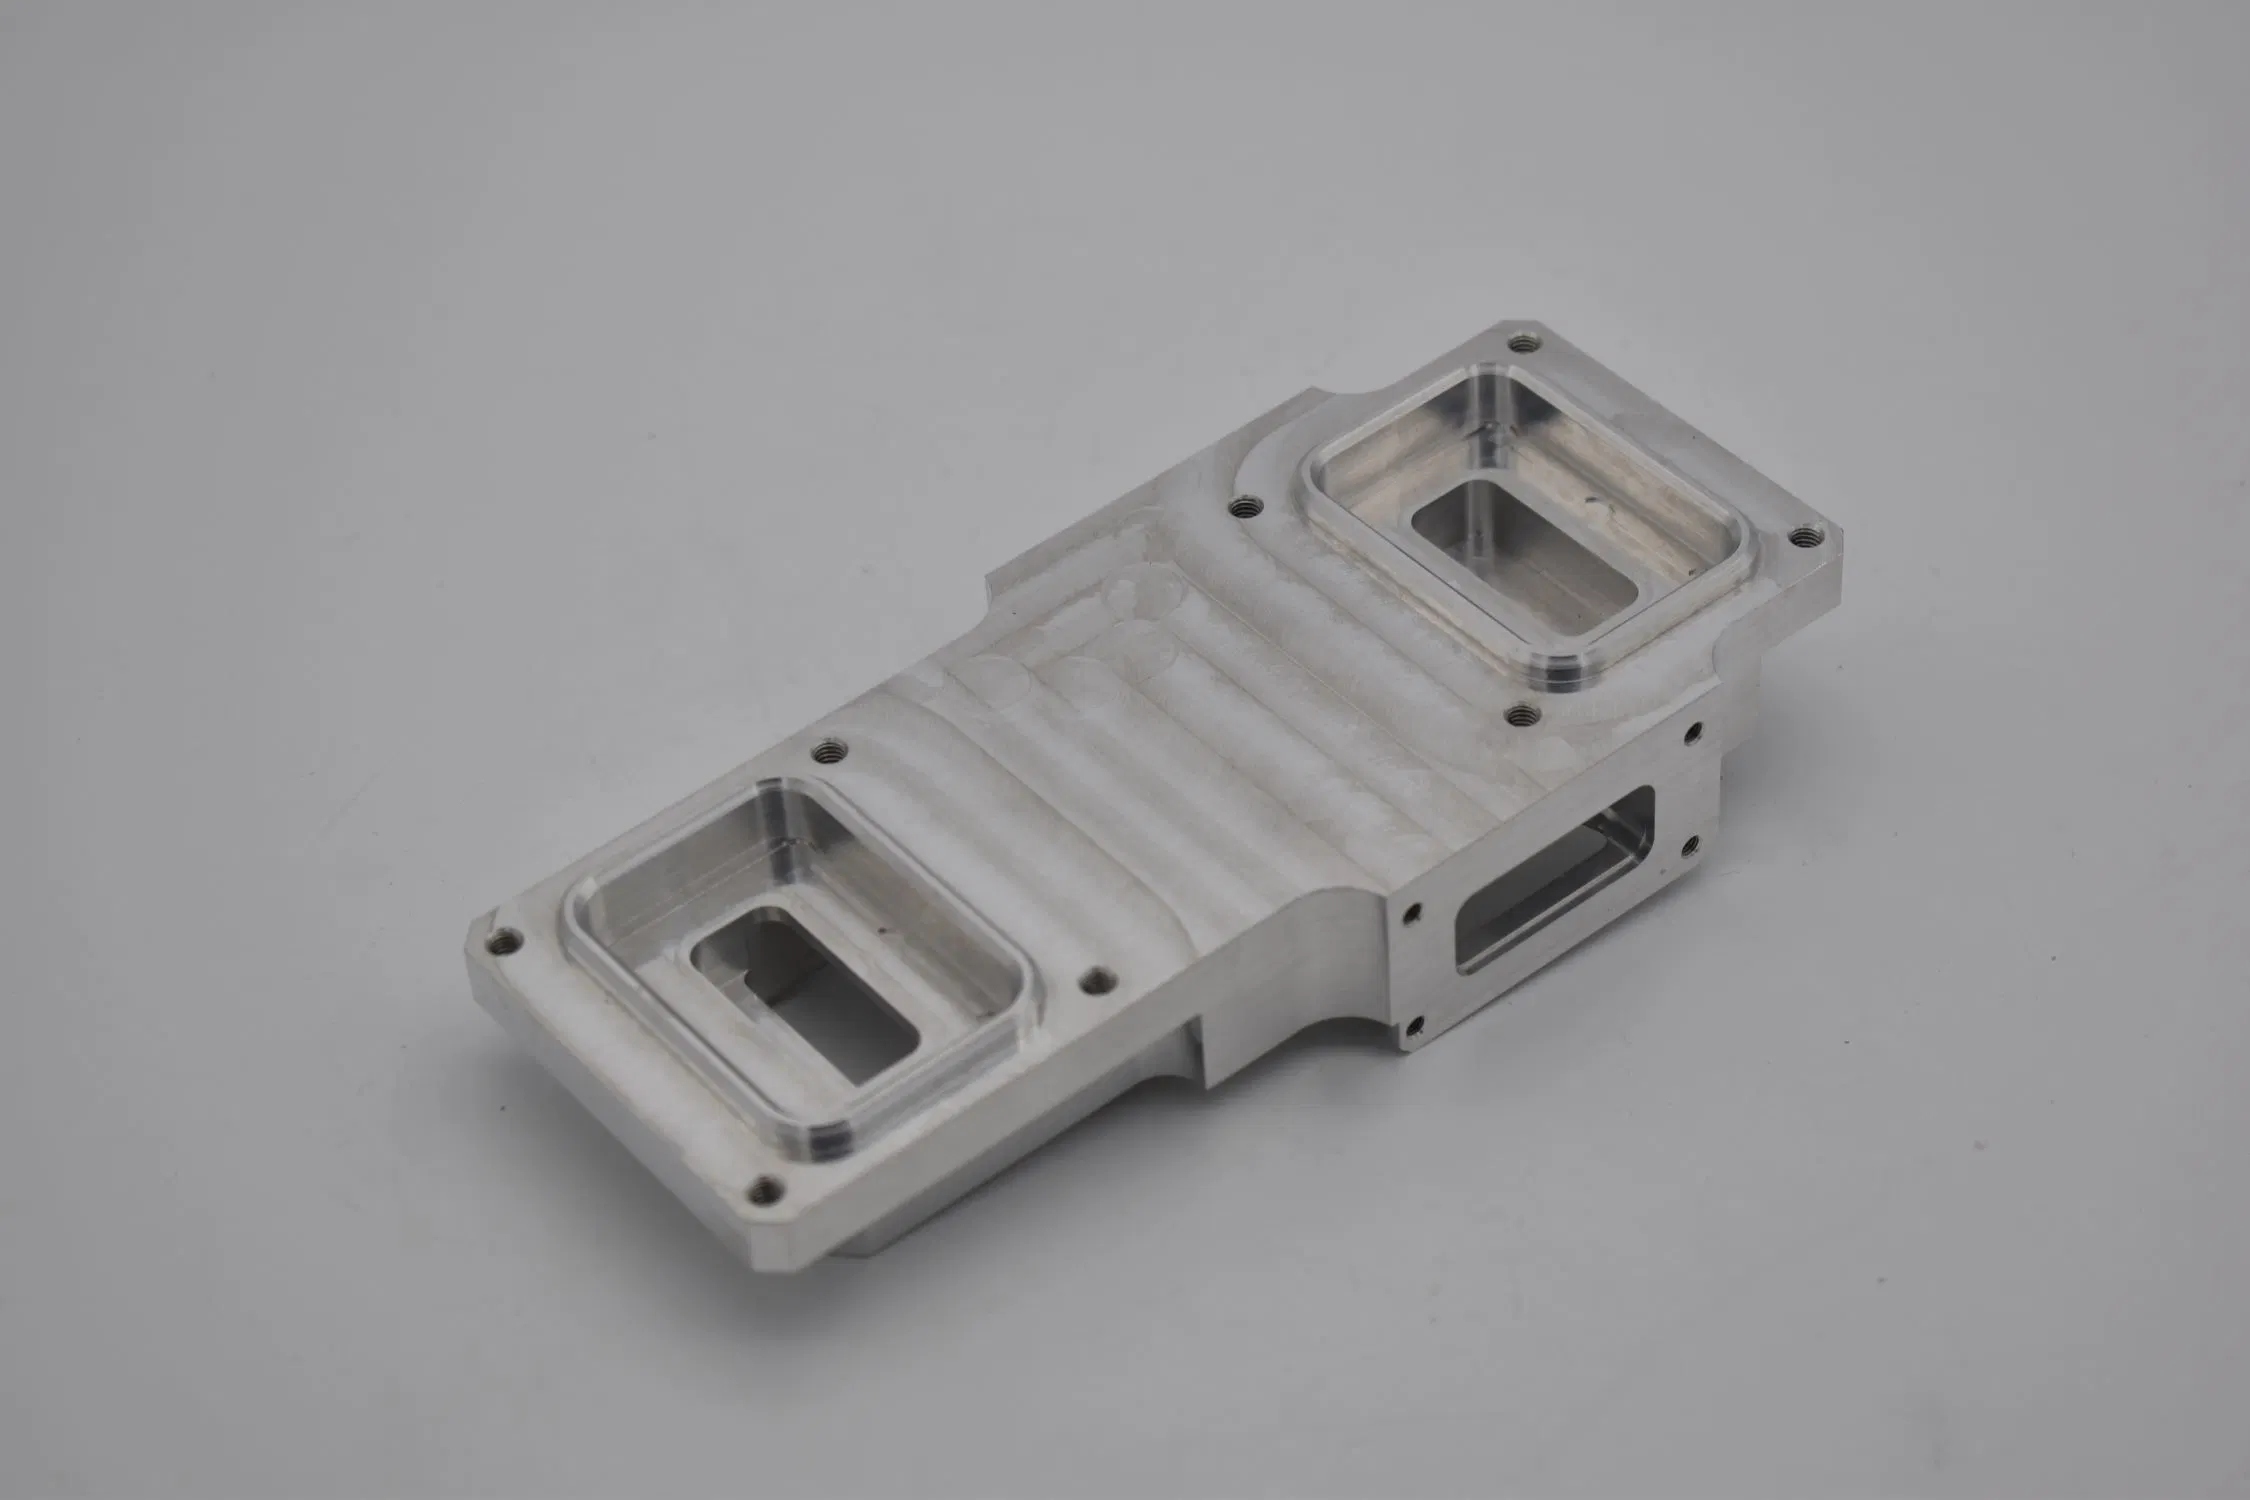 Machiningservice Communication CNC Aluminum Case Milling Parts